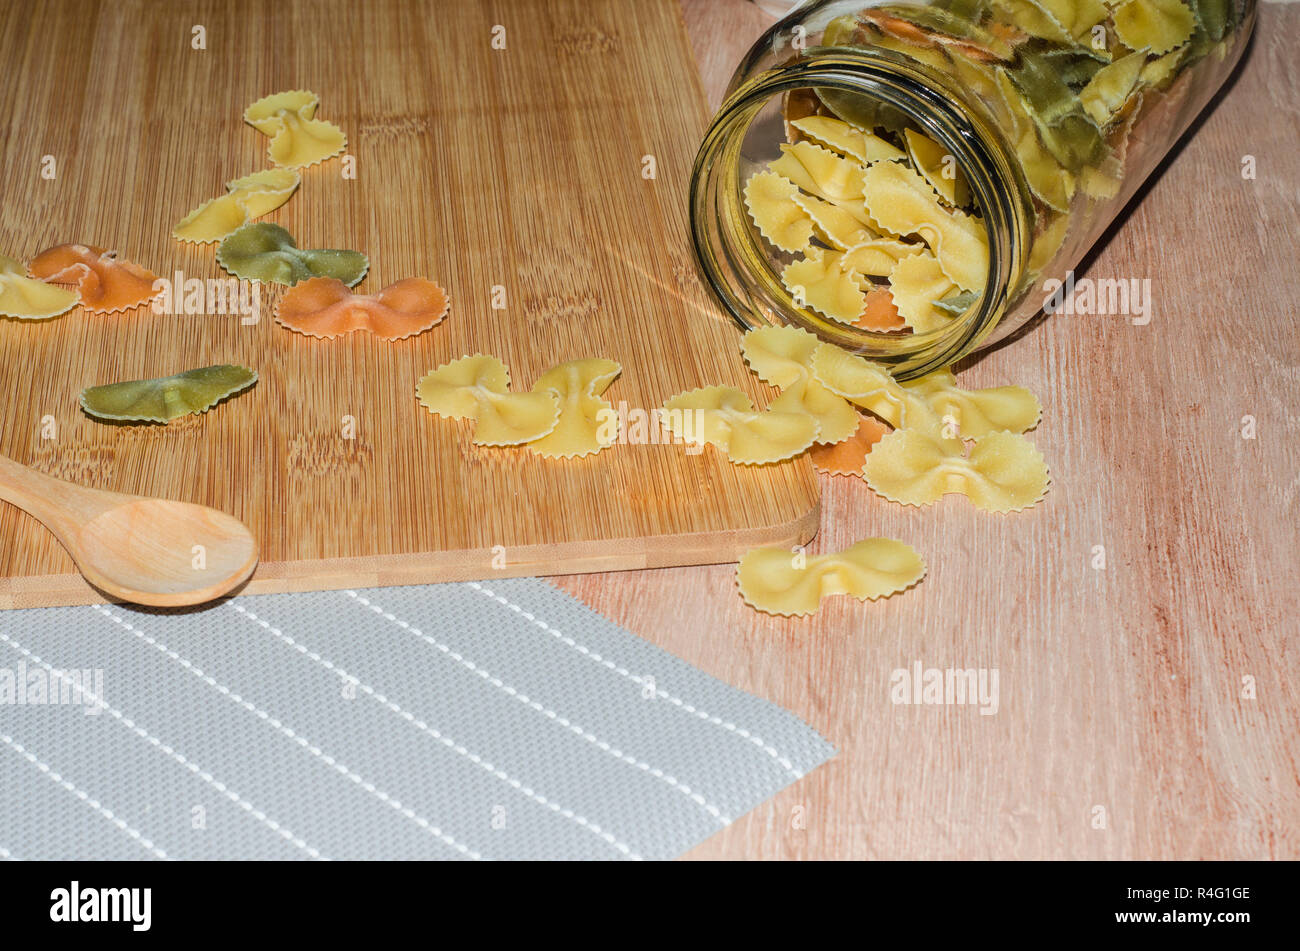 Fideos o pasta de vegetales con tres sabores Foto Stock